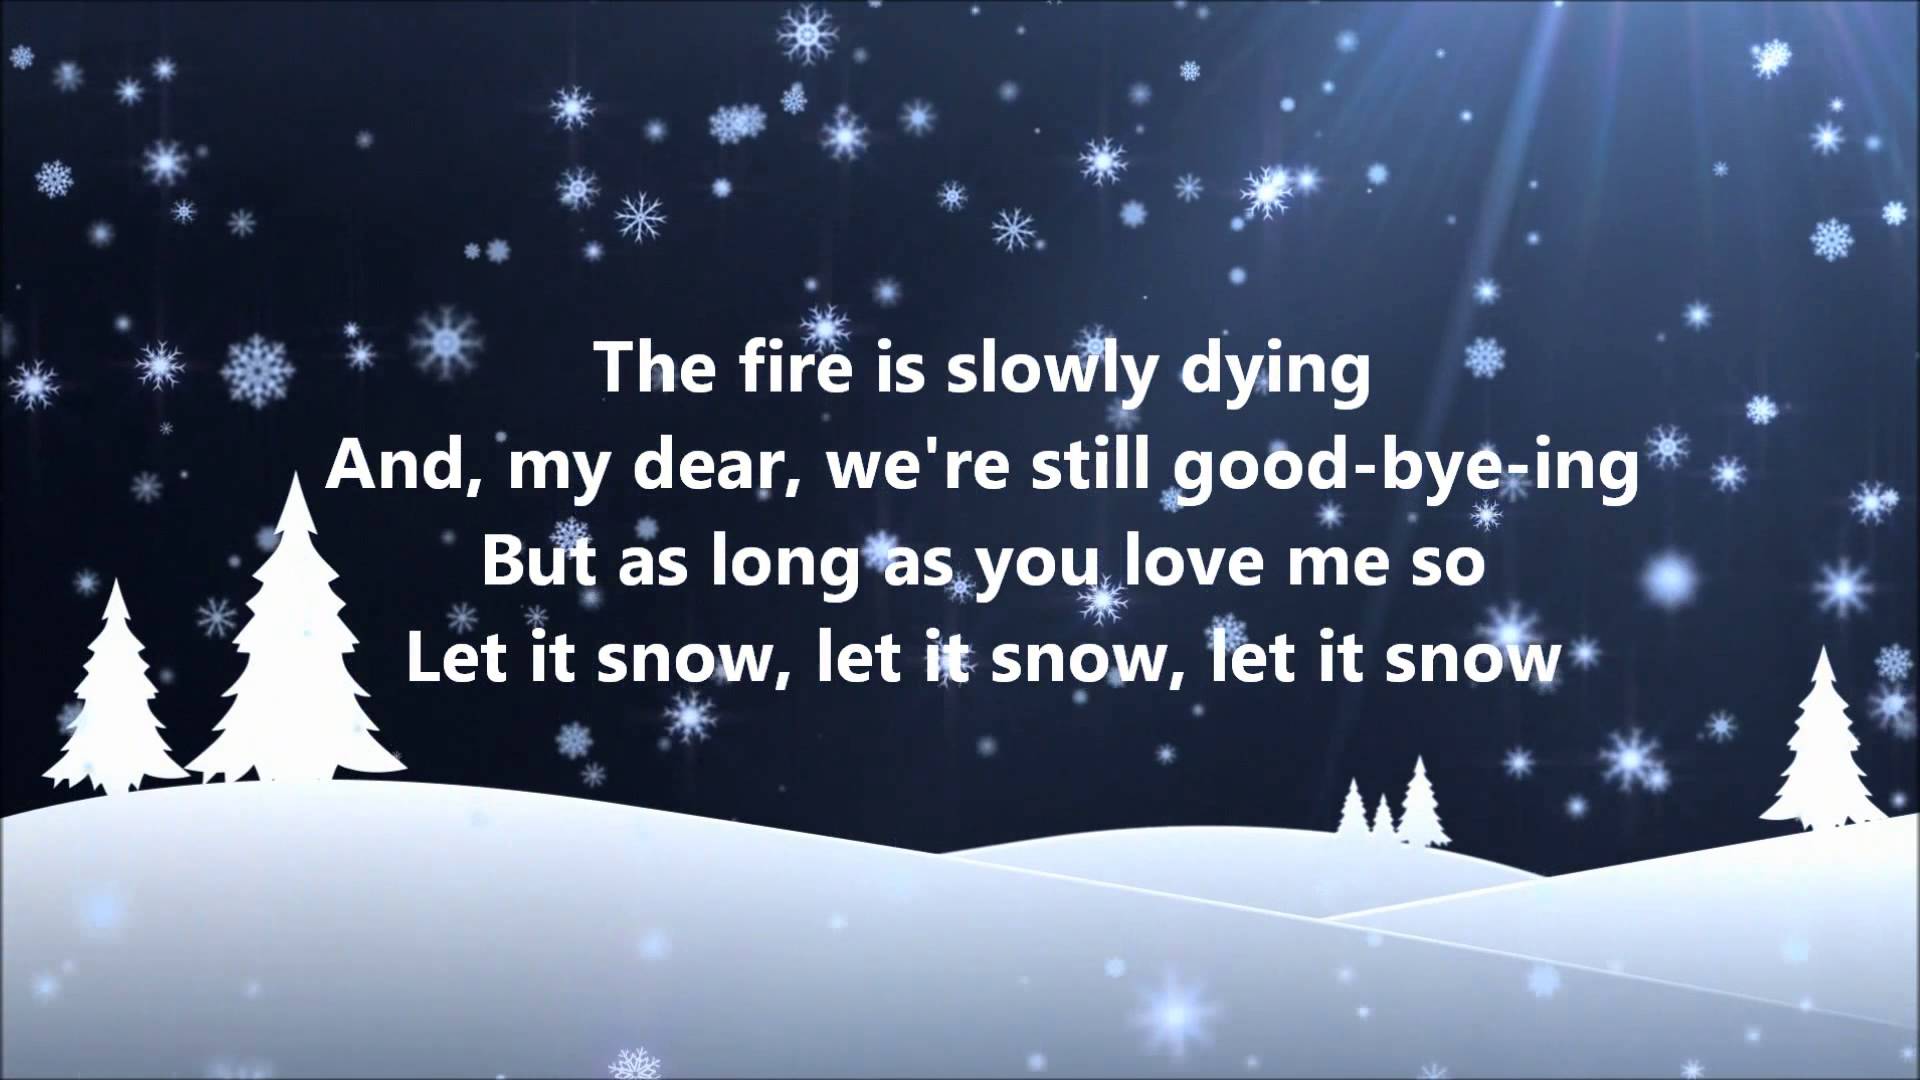 Dean Martin - Let It Snow (Lyrics) - YouTube